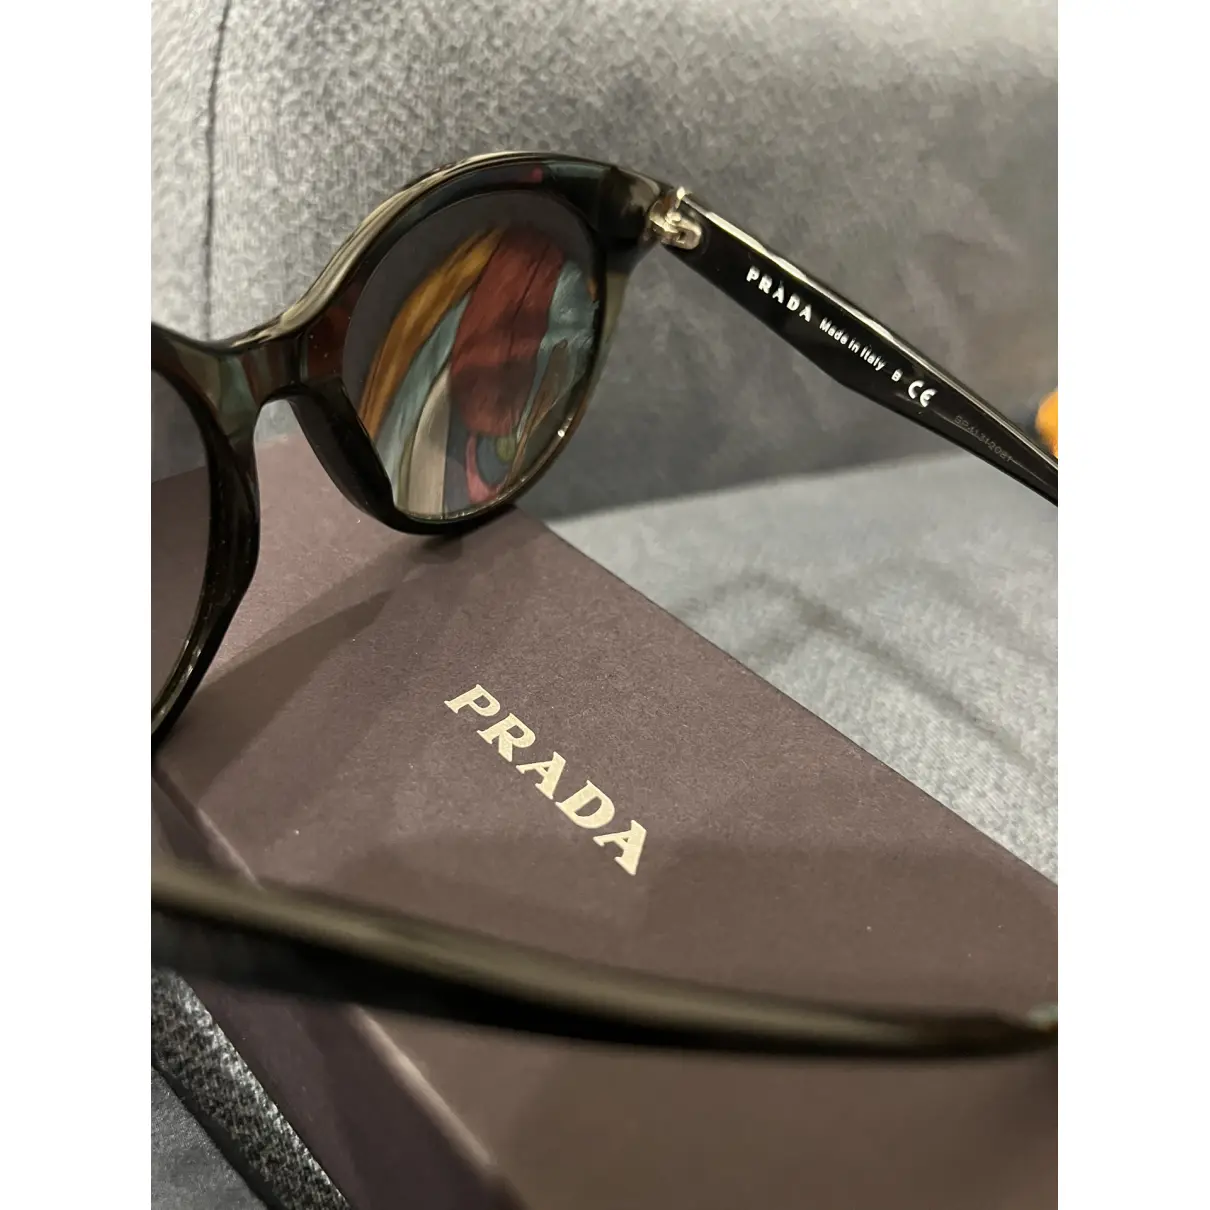 Luxury Prada Sunglasses Women